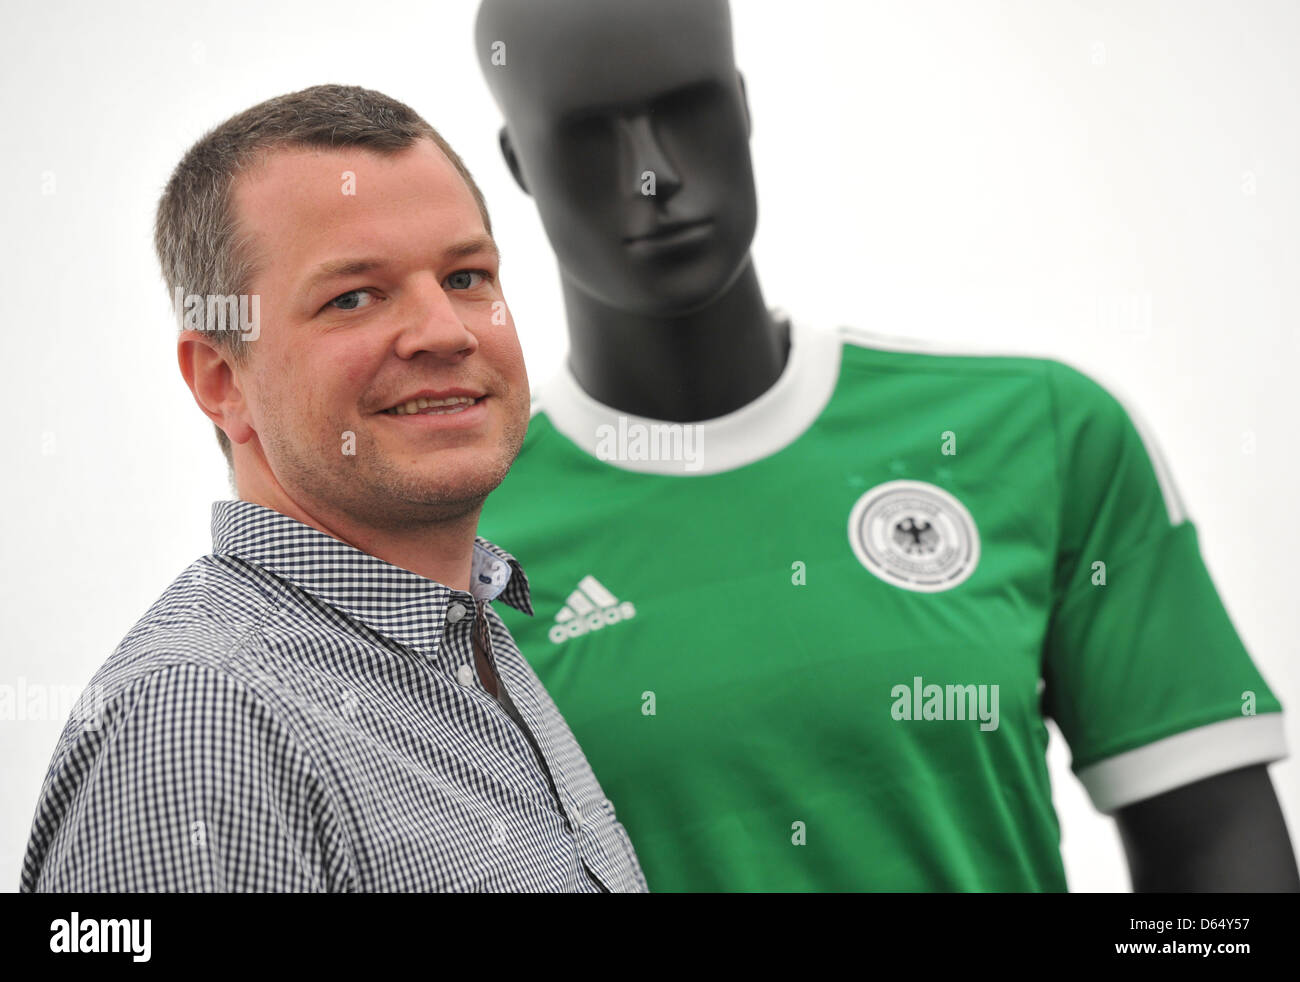 Bjoern Jaeger, Jefe de diseño de la camiseta de fútbol de adidas, posa  junto a la Alemana Away Jersey después de una conferencia de prensa del  patrocinador del equipo nacional de fútbol